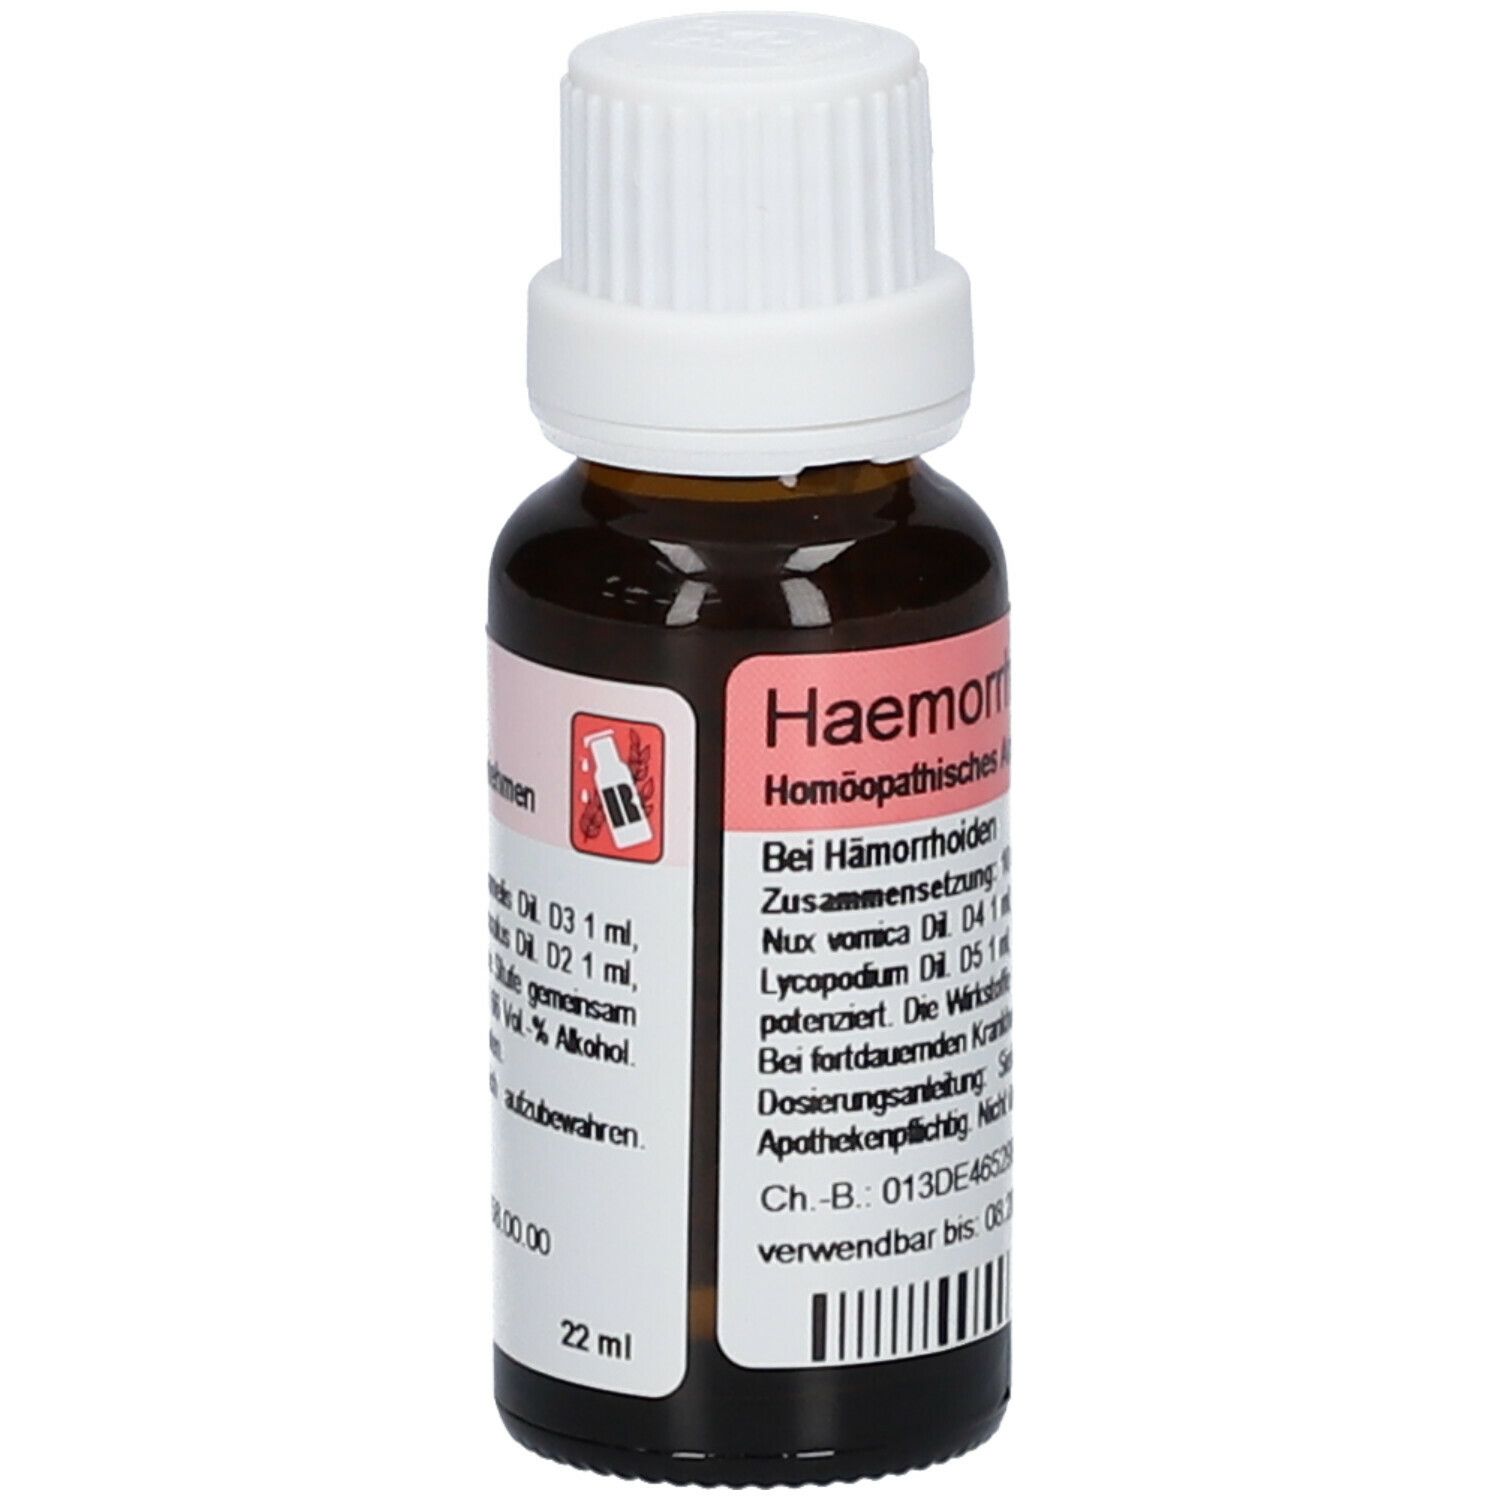 Haemorrhoid-Gastreu® N R13 Tropfen